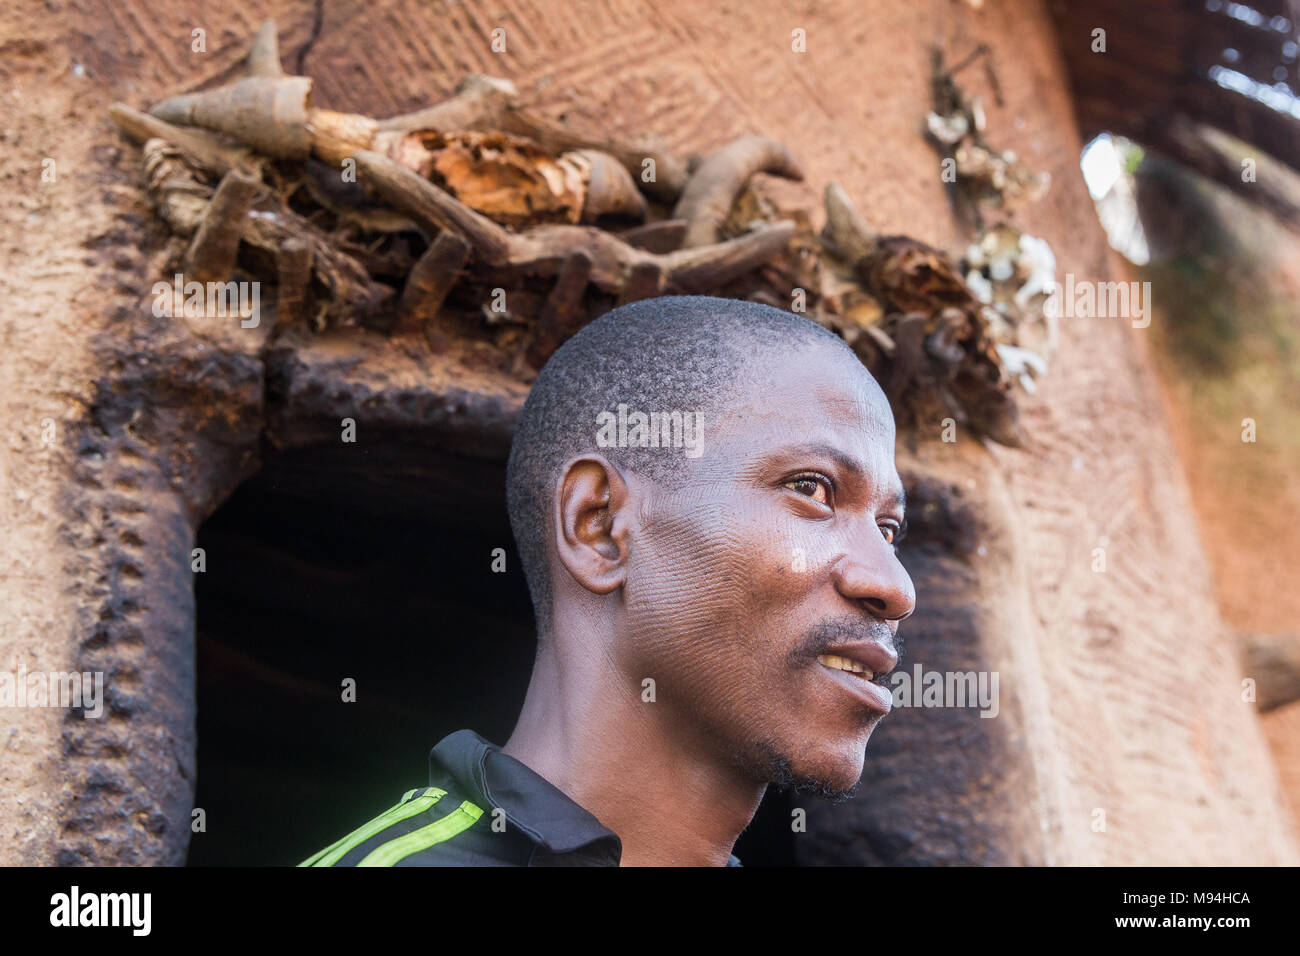 Die Somba Menschen, die von der nordwestlichen und nördlichen Benin, Togo, sind für Ihren Körper Narben Rituale bekannt, ab ca. 2 Jahre. Diese Narben sind eine Form der dauerhaften Kennzeichnung, die eine Person als Zugehörigkeit zu einem bestimmten Stamm identifizieren. Zusätzliche Markierungen sind in der Pubertät, die Ehe, die nach der Geburt eines Kindes und andere Ereignisse im Leben als eine Form der Kommunikation zwischen Menschen sichtbar aufgenommen. Kossokouangou, North Western Benin Stockfoto